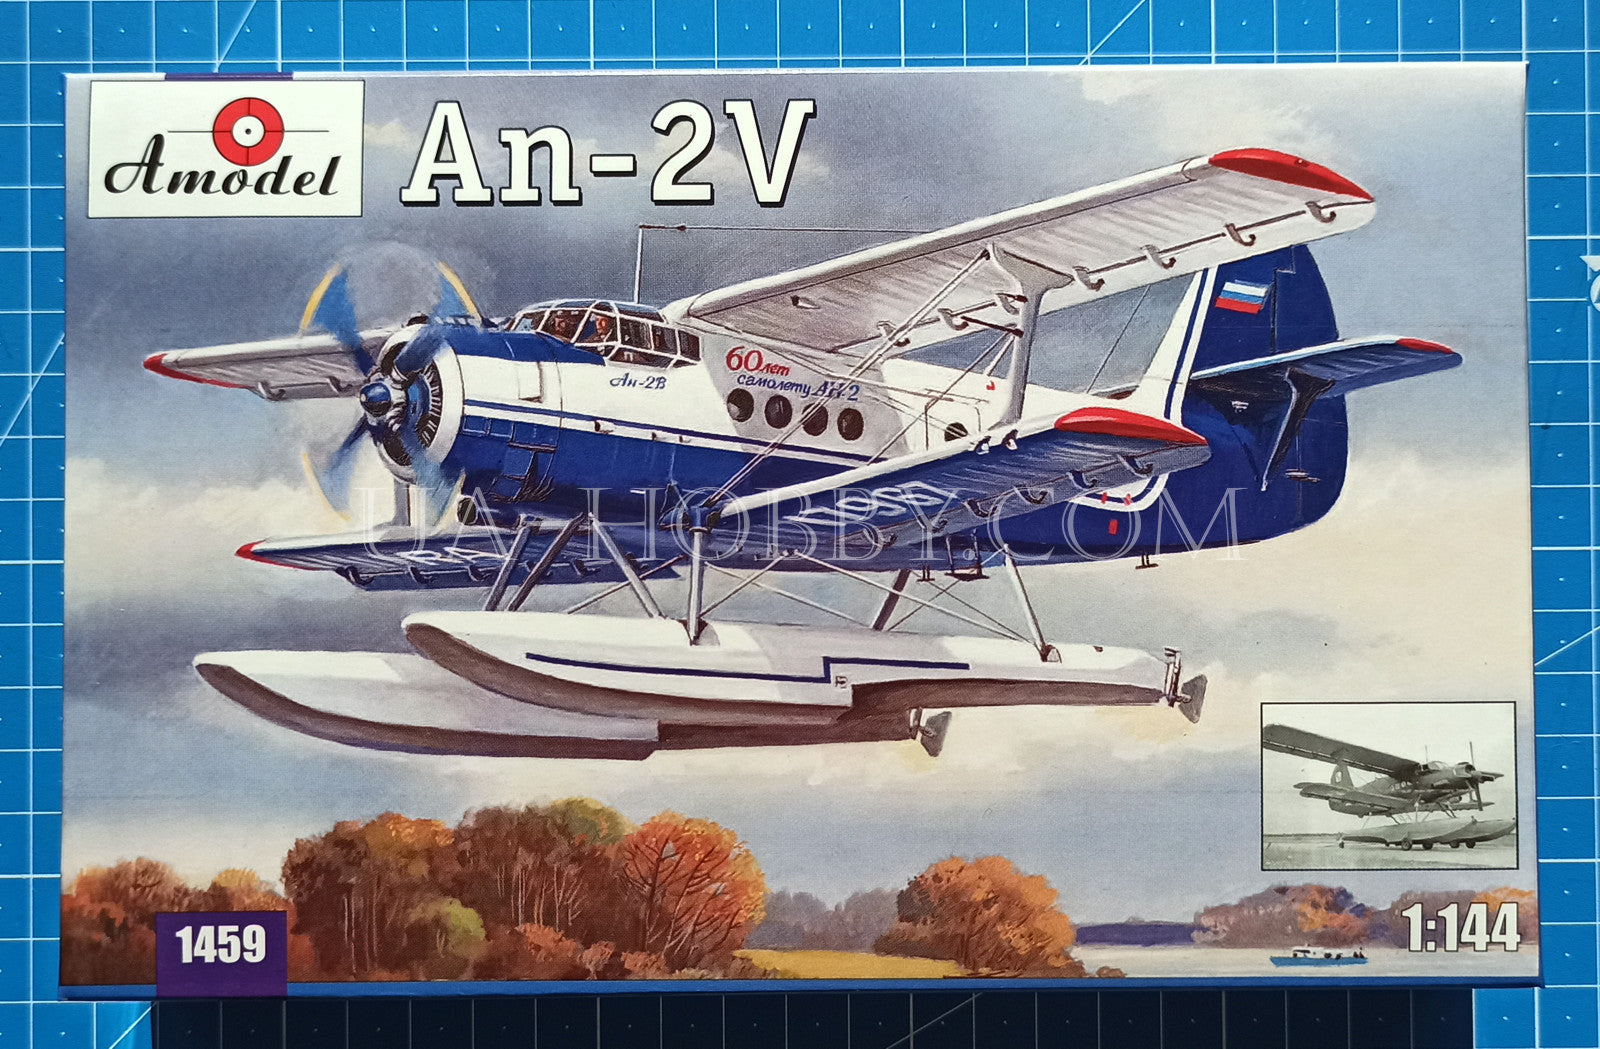 1/144 Antonov An-2V Colt. Amodel 1459